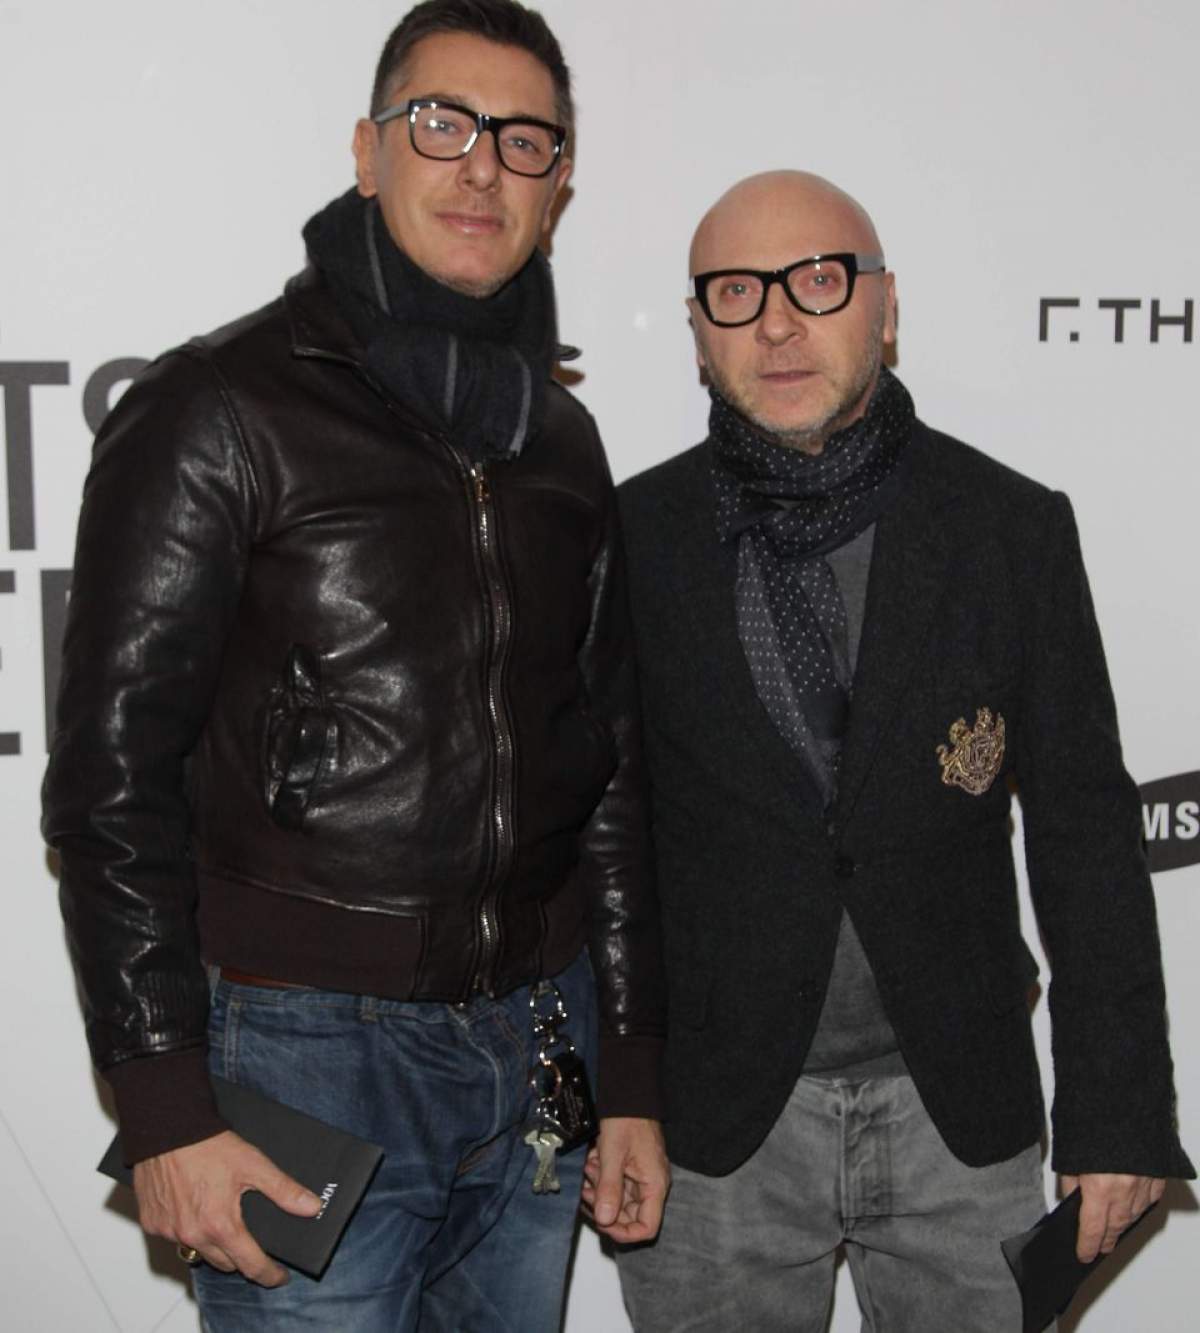 Şoc în lumea modei! Domenico Dolce şi Stefano Gabbana, condamnaţi la închisoare cu executare